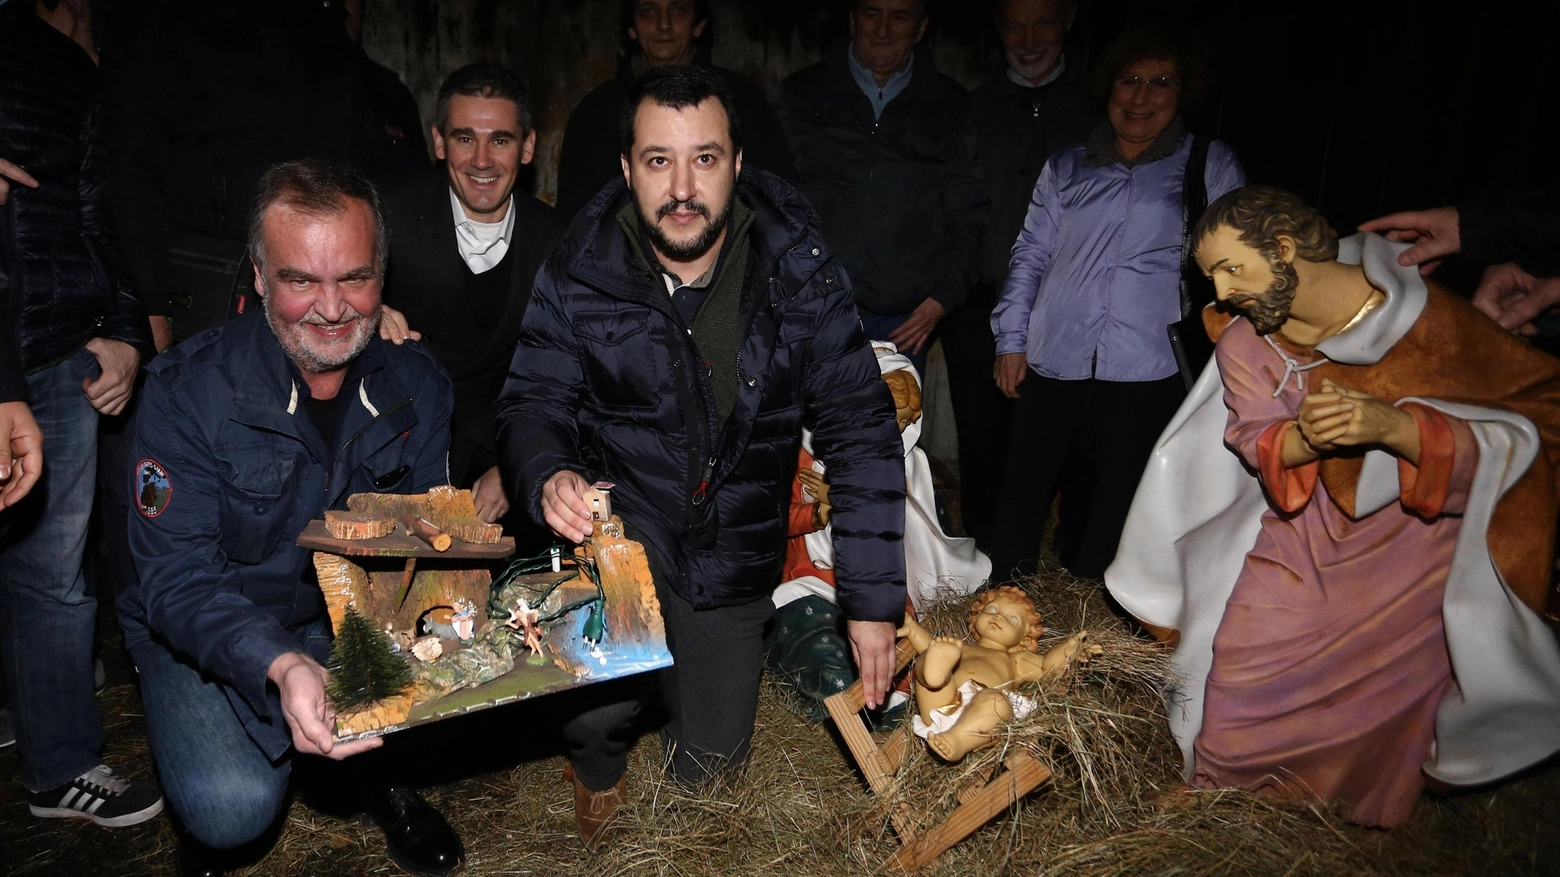 Salvini e Calderoli donano il presepe alla scuola Bergamasca (Ansa)